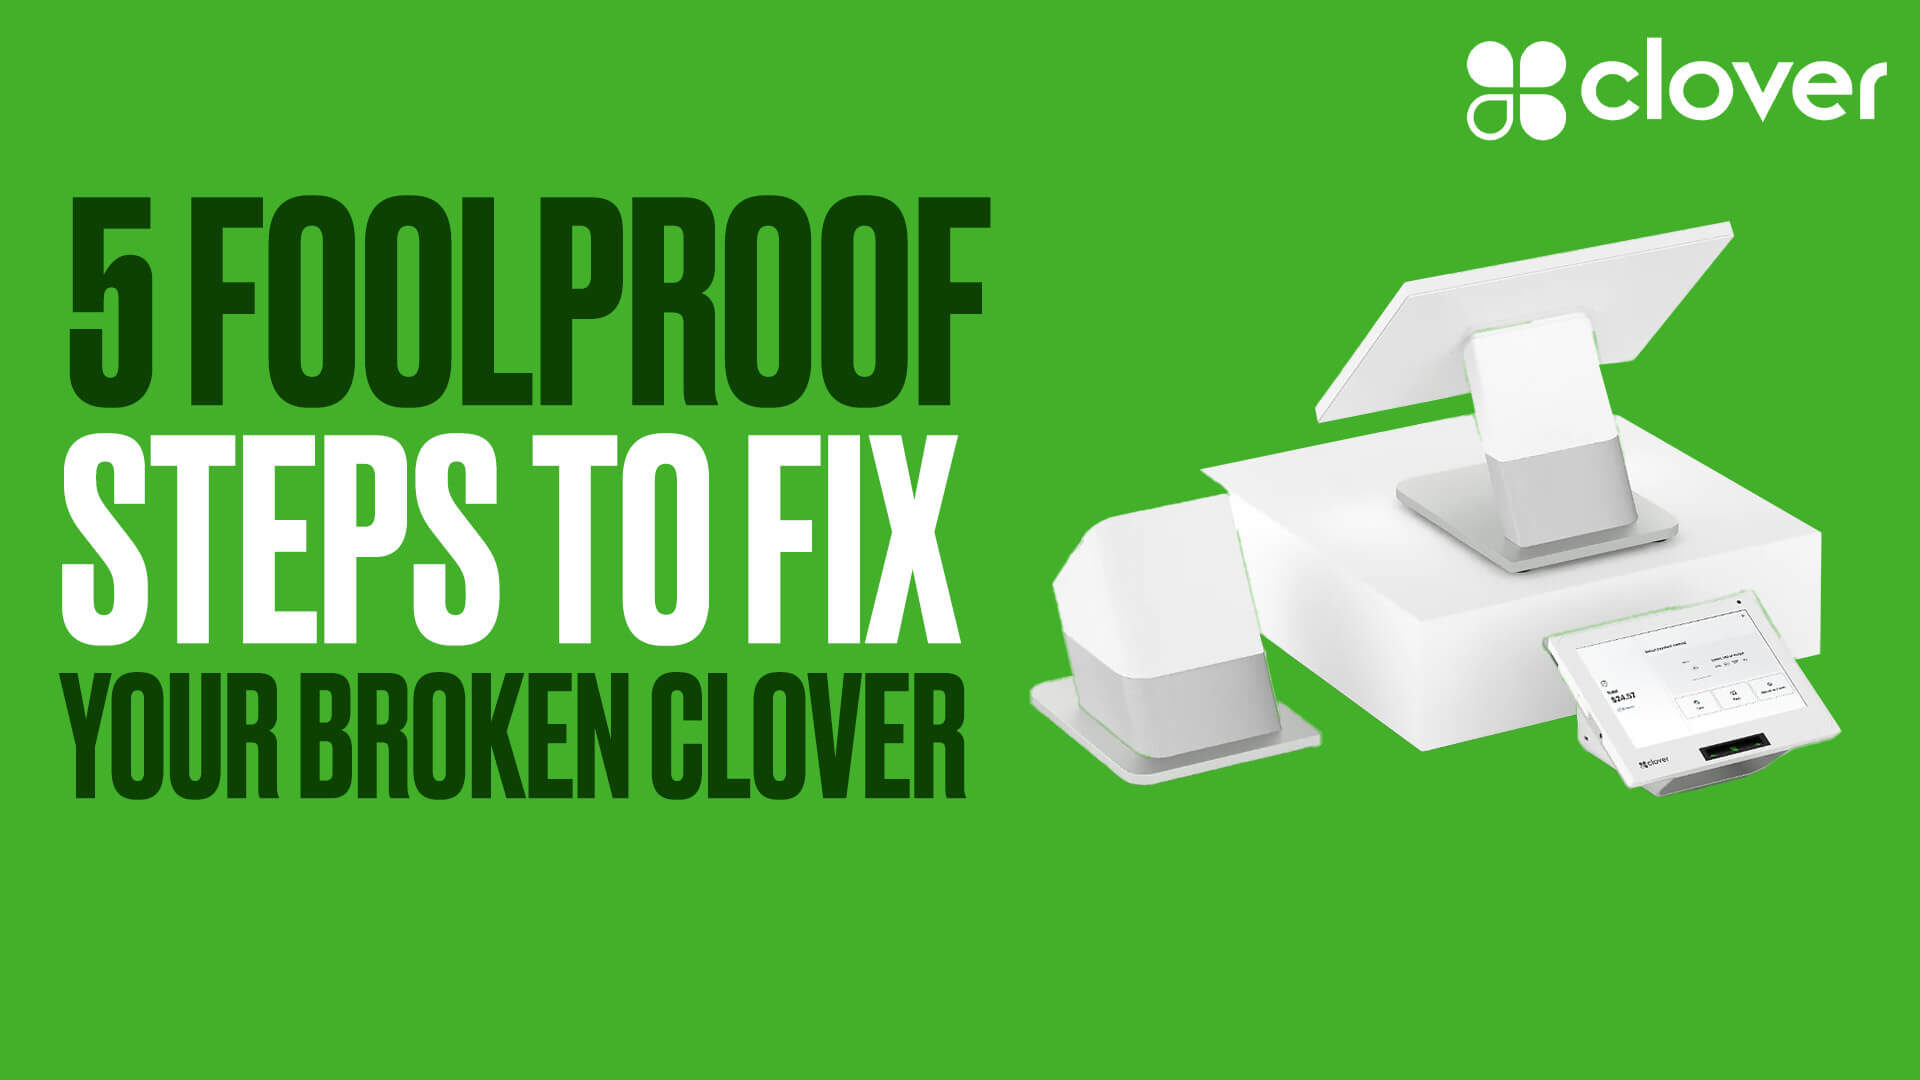 5 Foolproof Steps to Fix Your Broken Clover Machine